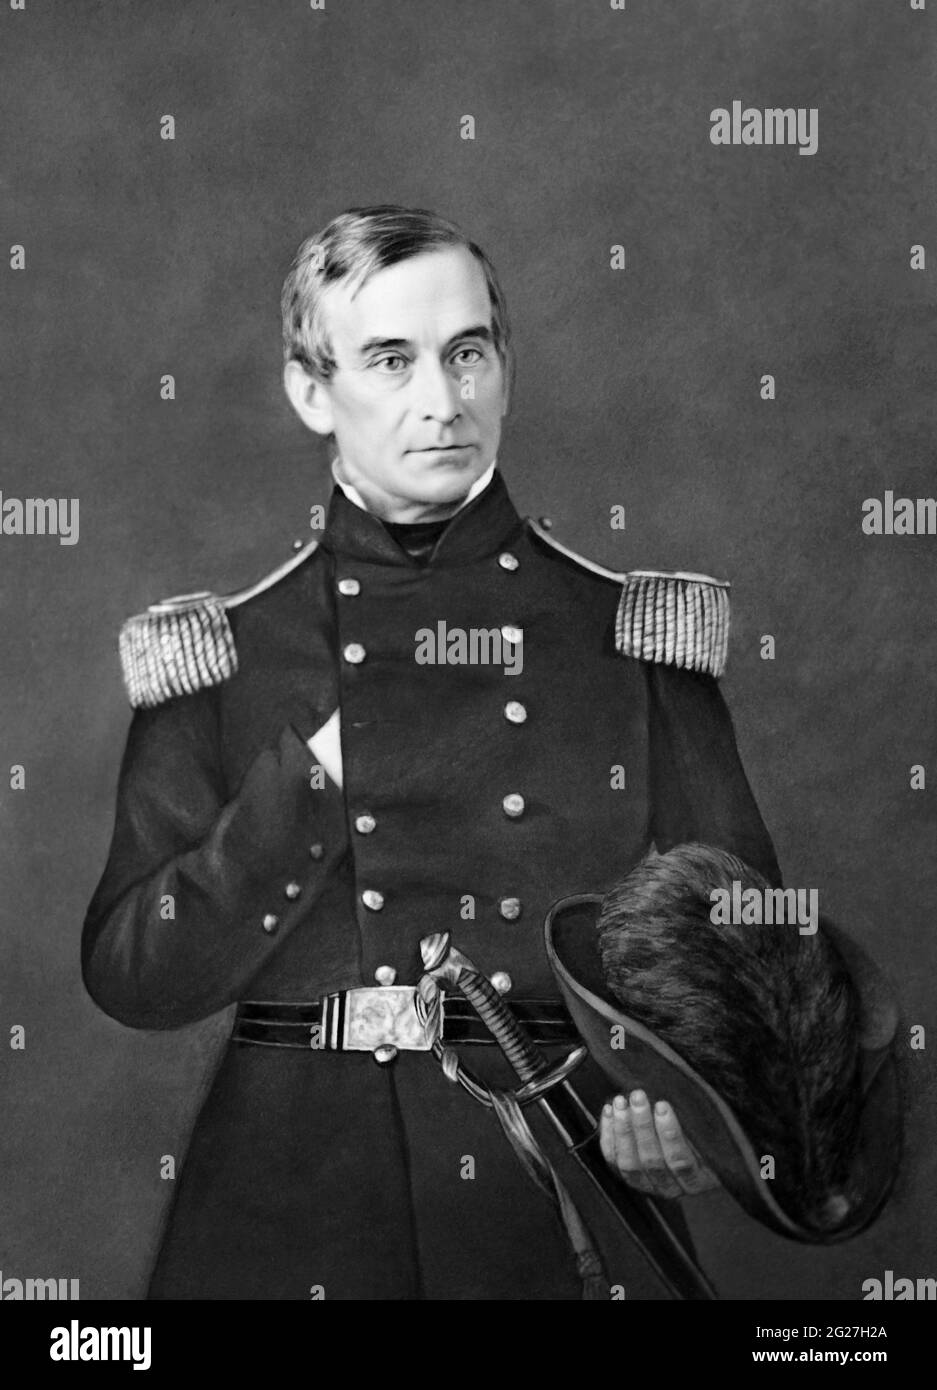 Porträt von Major Robert Anderson, der während des amerikanischen Bürgerkrieges als Offizier diente. Stockfoto